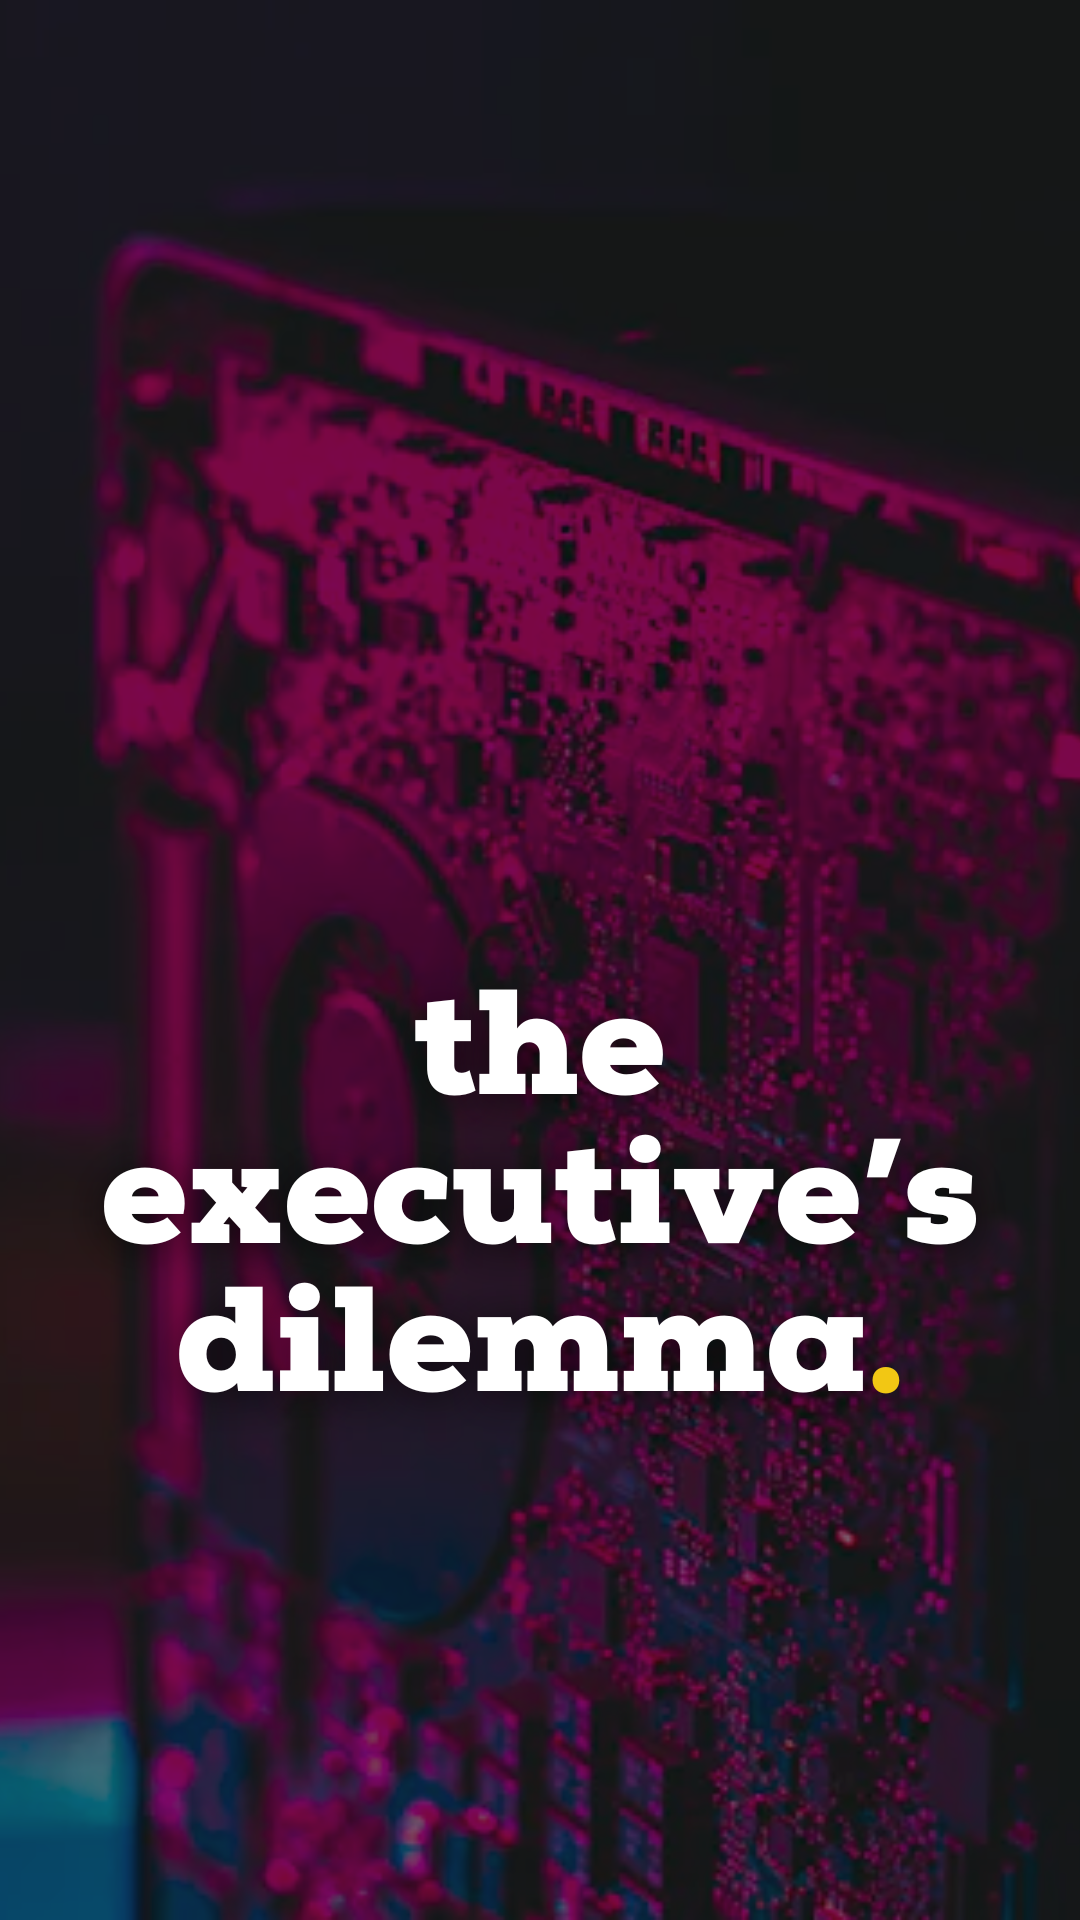 the executive’s dilemma. (1)